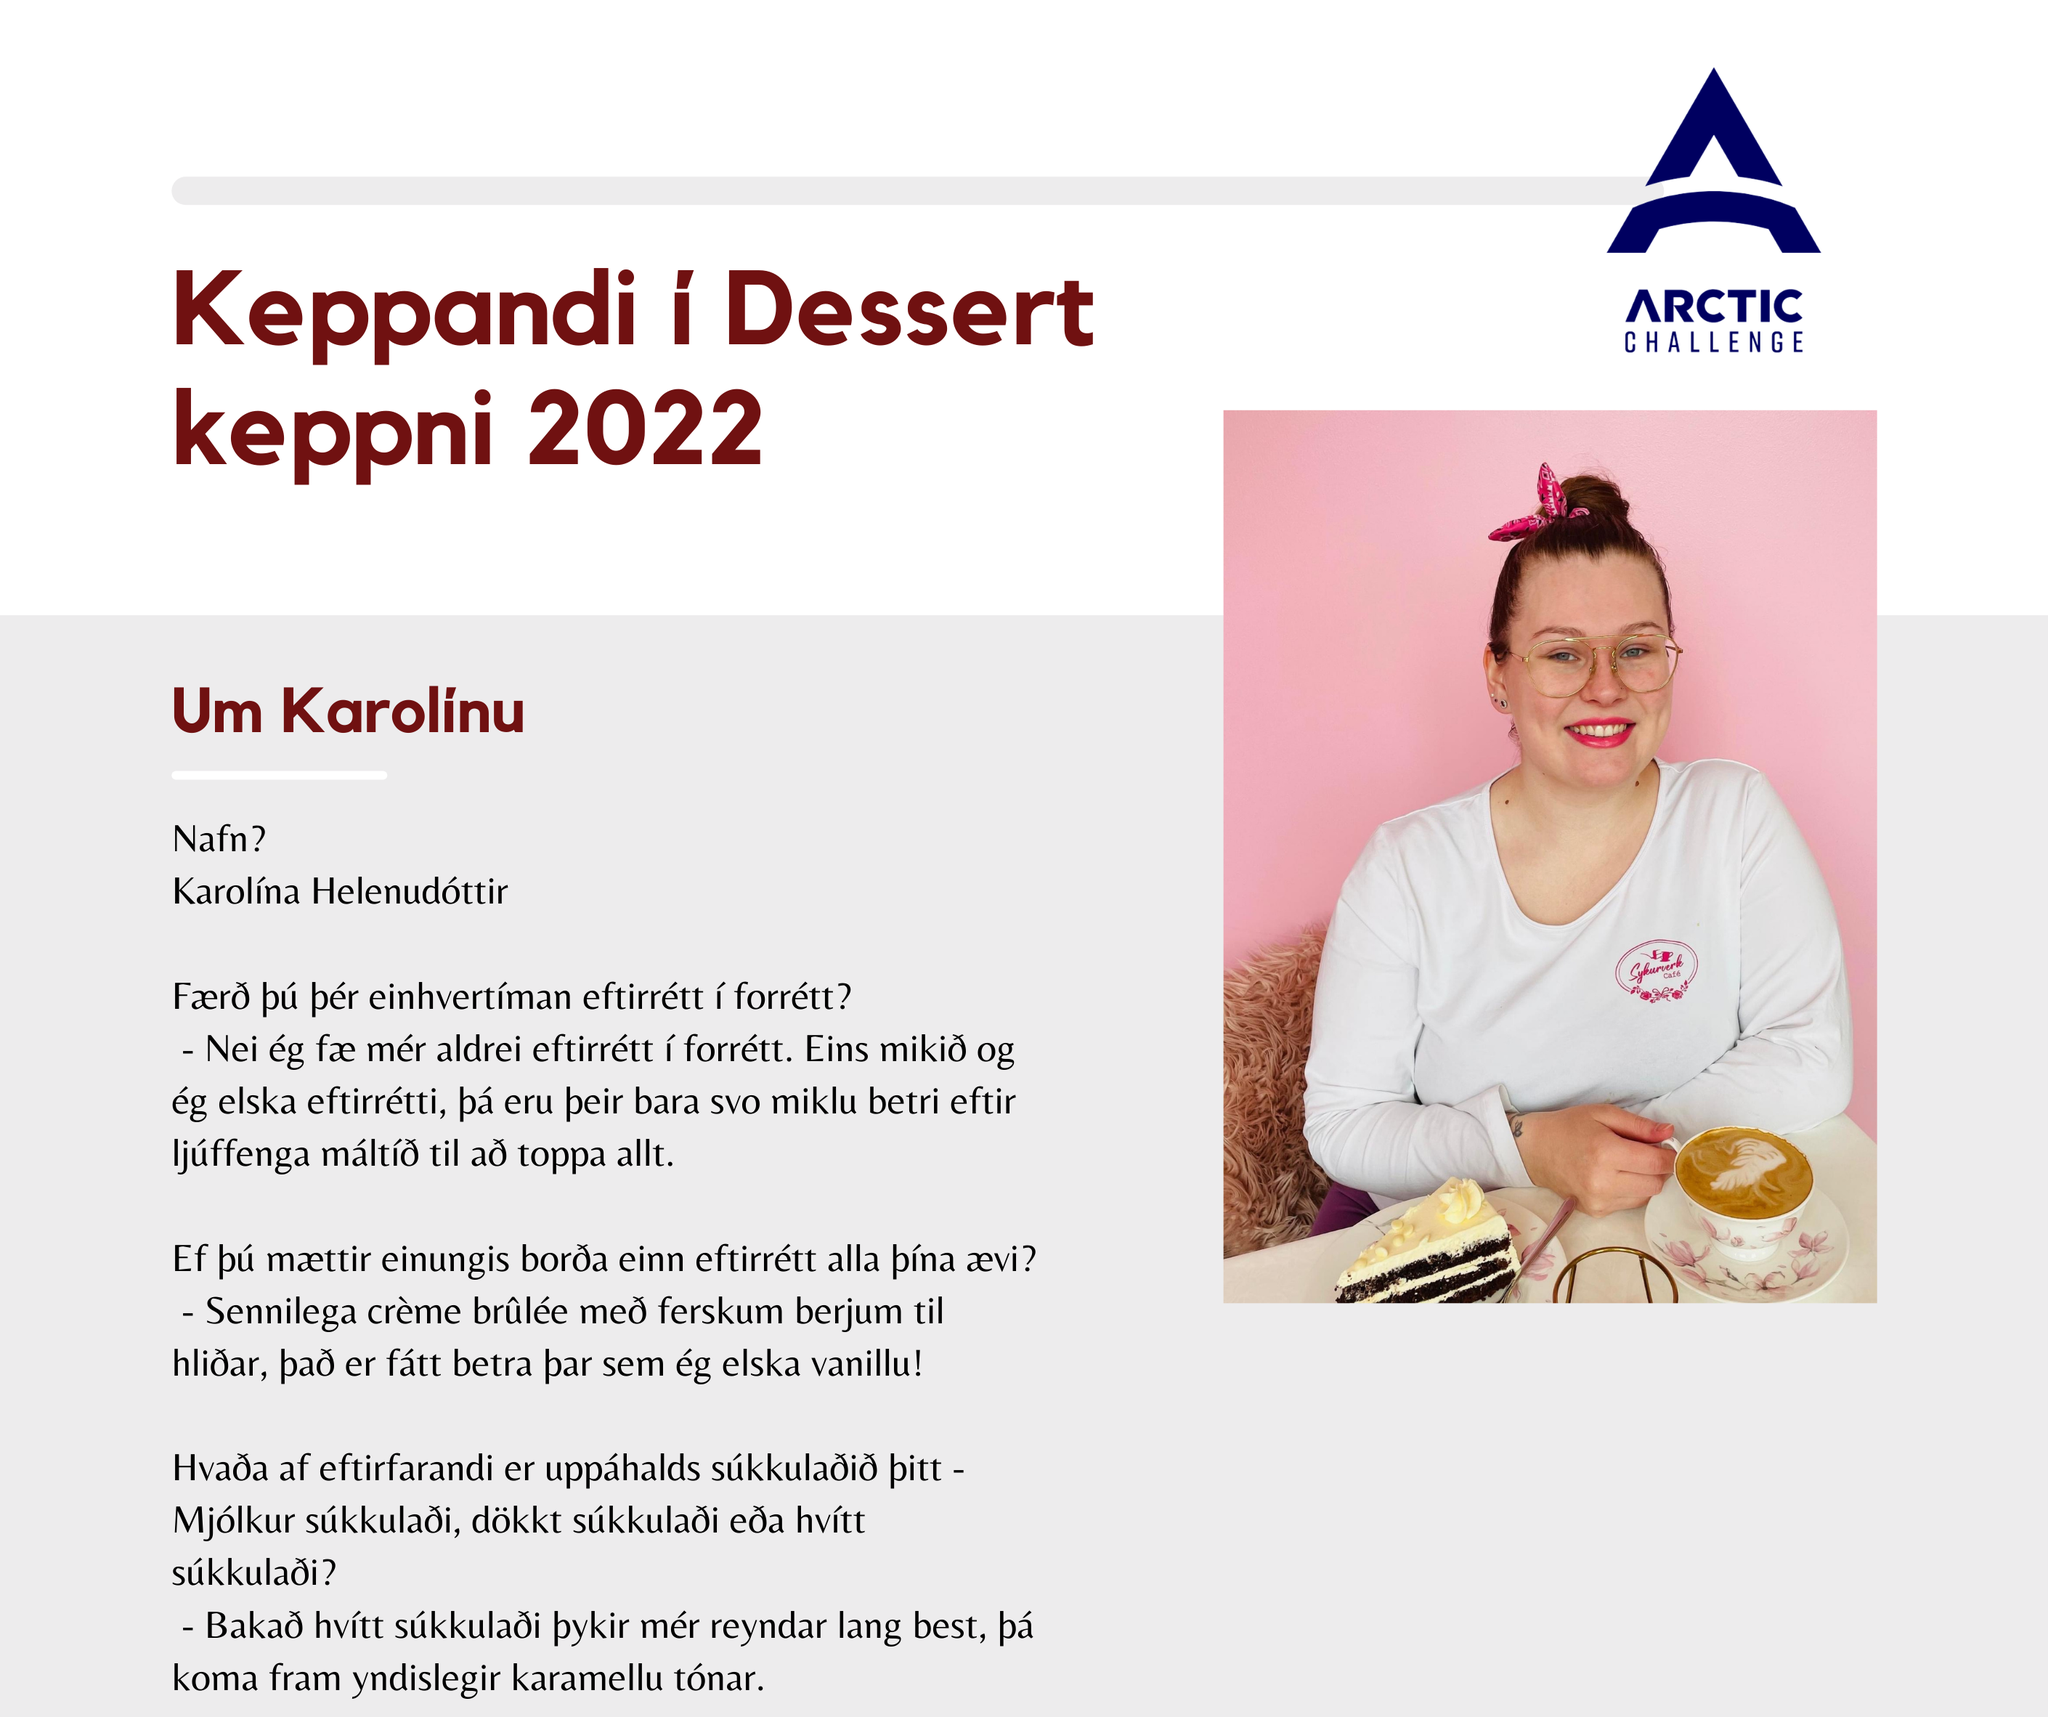 Kynning á keppendum í dessert keppni Arctic Challenge – Karolína Helenudóttir